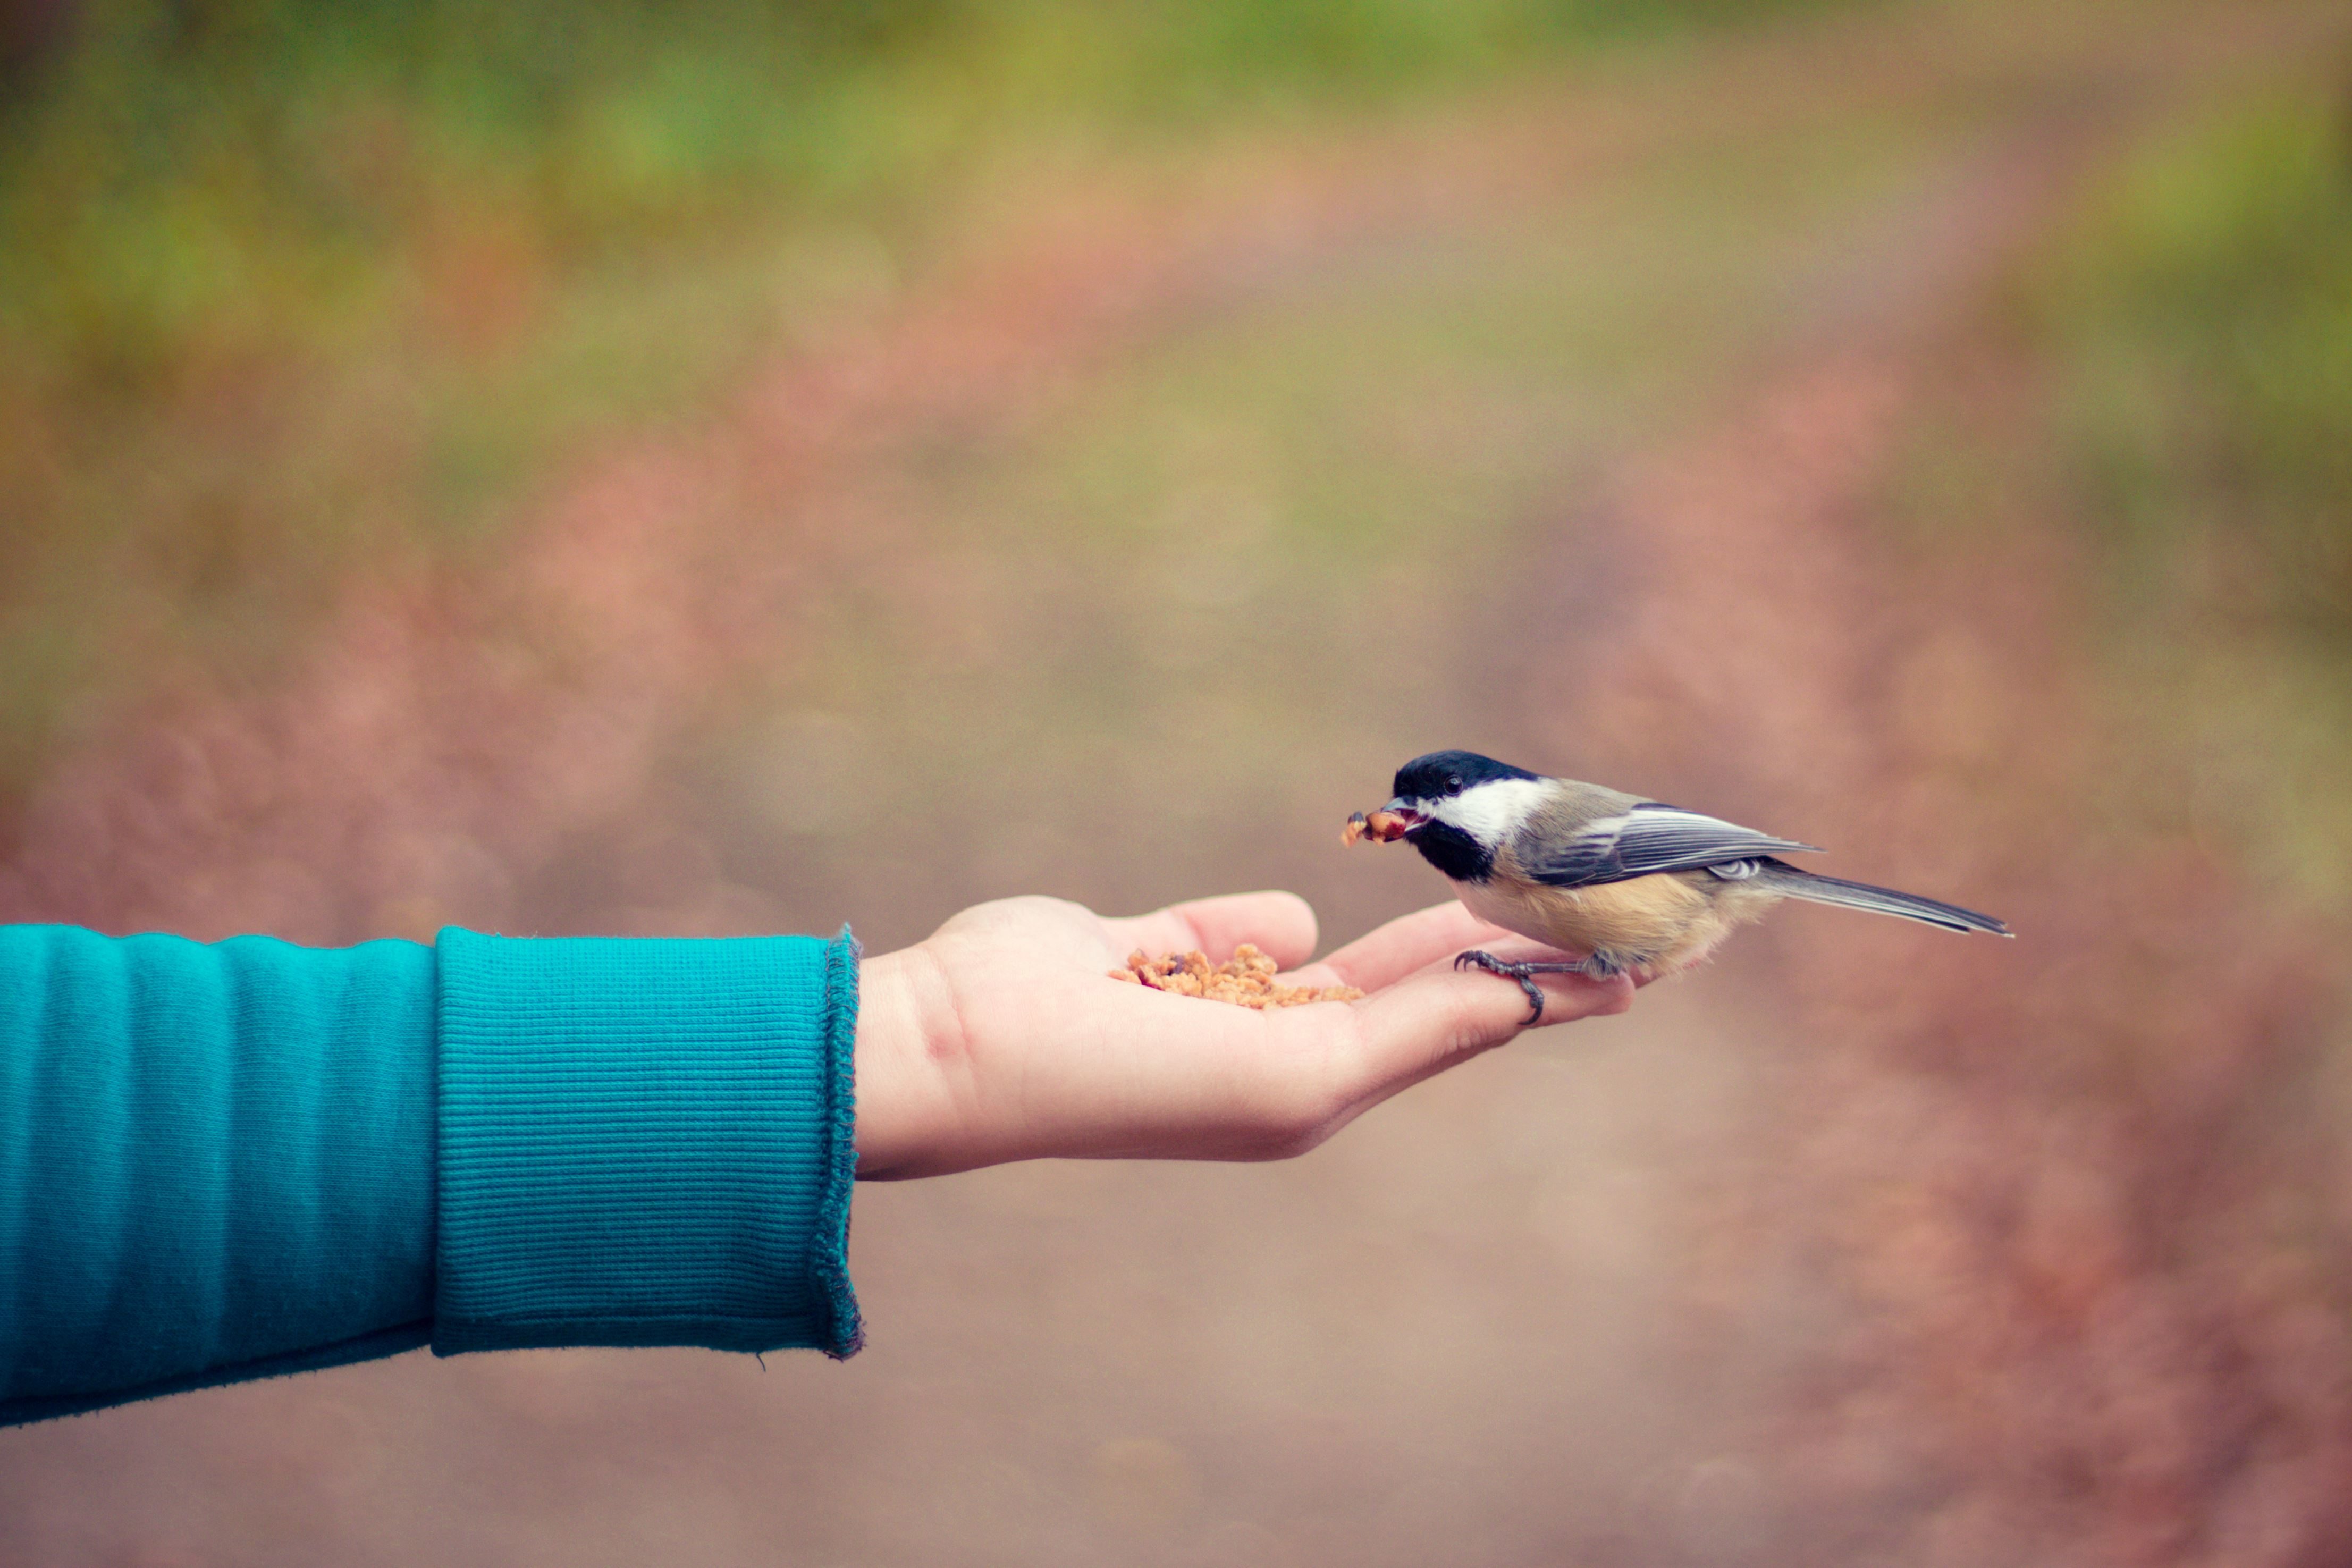 Take bird. Птичка на руке. Птичка на ладони. Синичка на руке. Птичка на пальце.